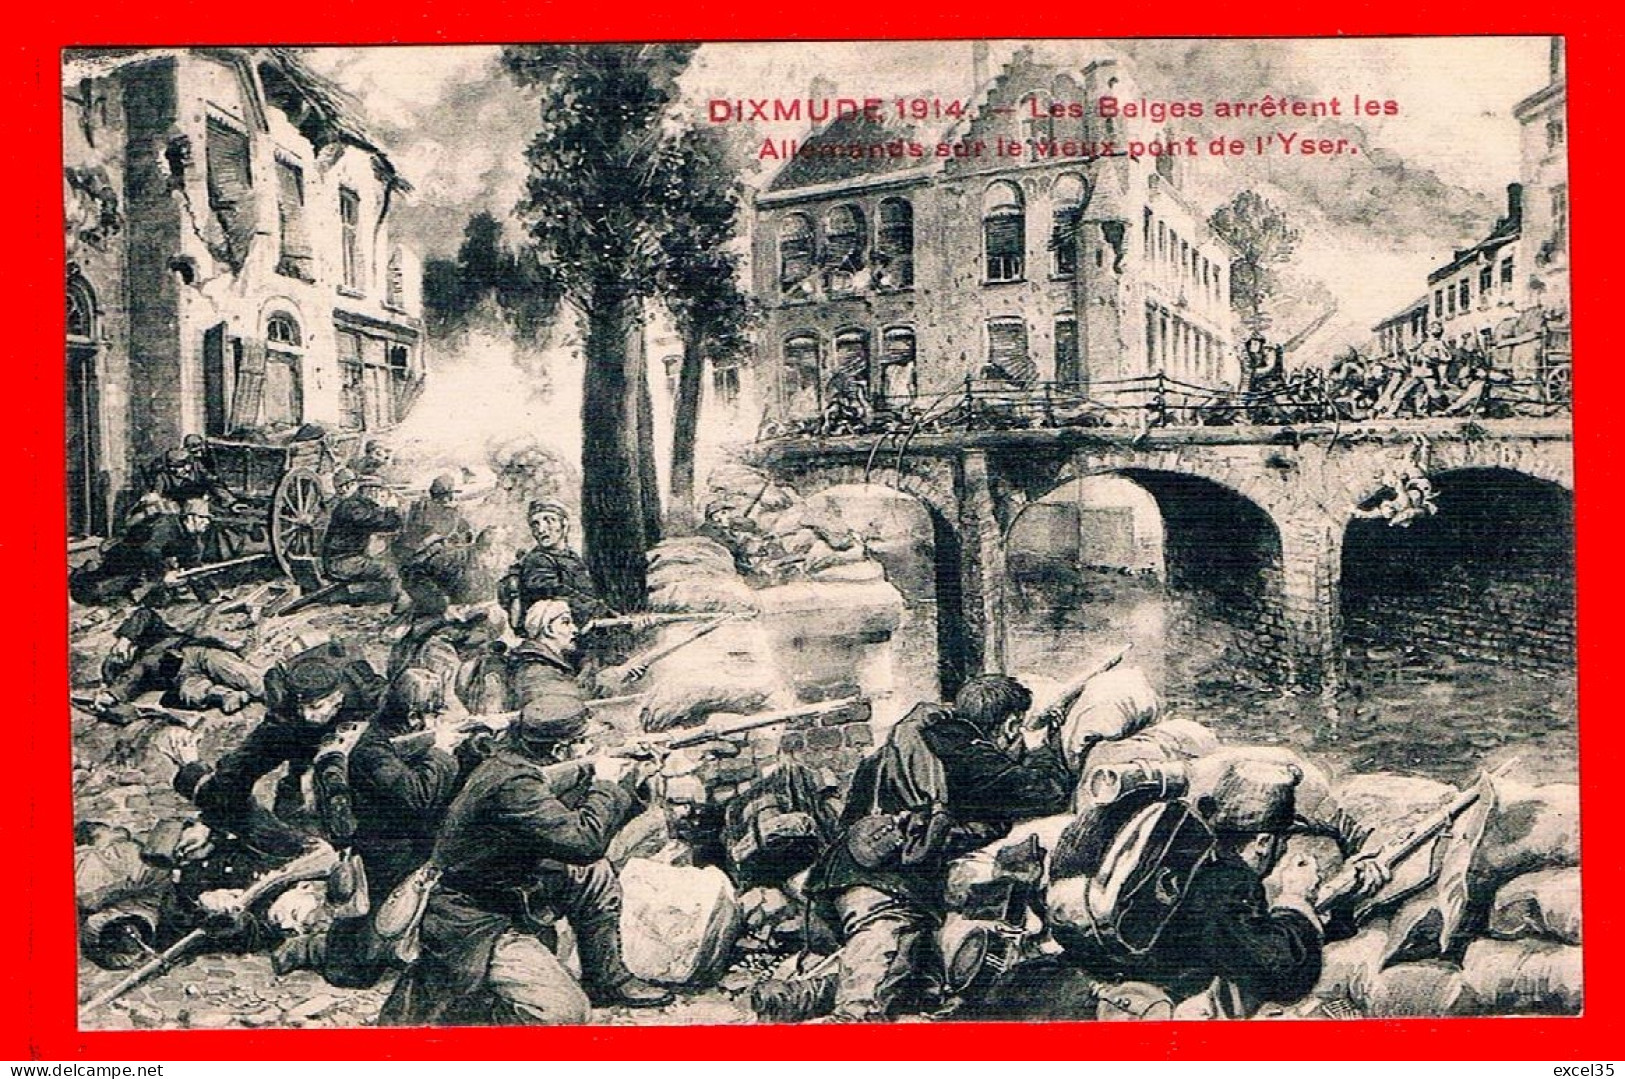 11 CPA TGP NV - BELGIQUE YSER 1914 - Taube Abattue, Train Blindé, Inondation, Etc... LIEGE - DIXMUDE - HAELEN - LA PANNE - Colecciones Y Lotes